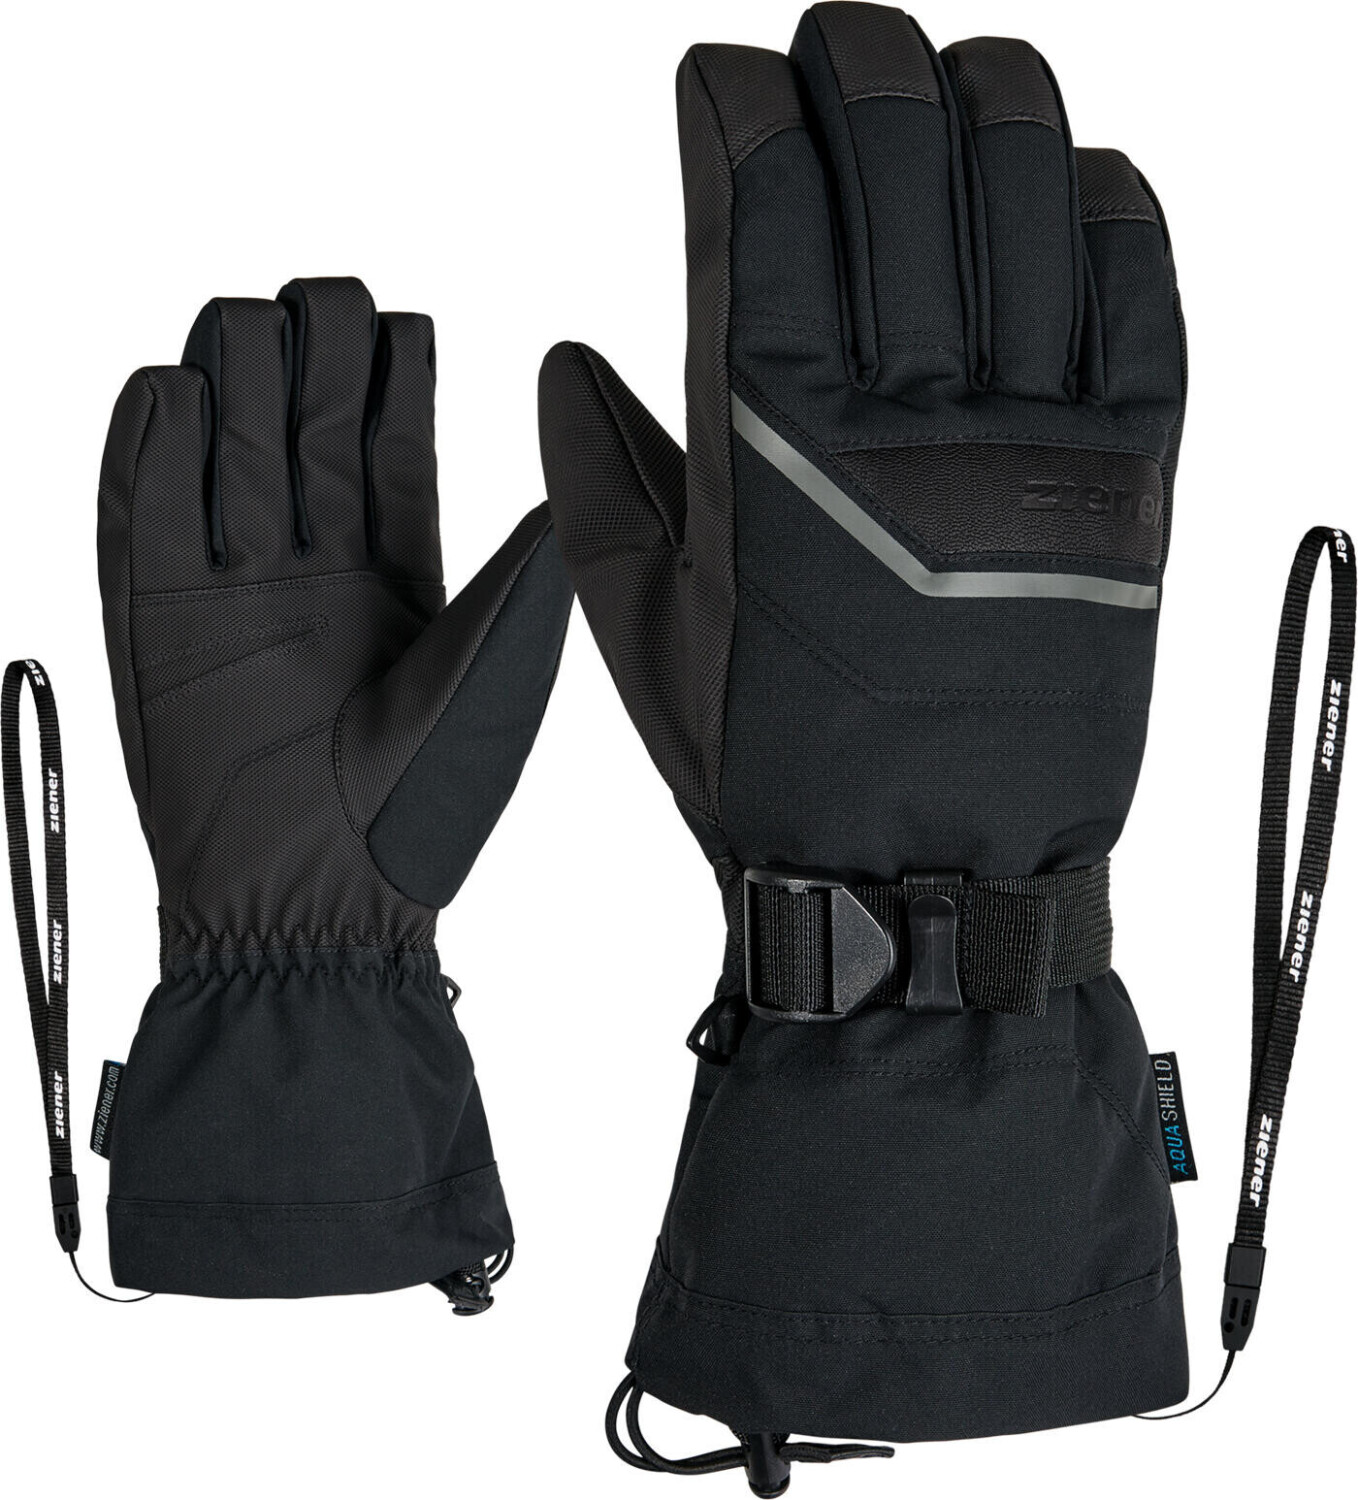 Ziener Gillian ASR Glove Ski Alpine (801064) ab 35,95 € | Preisvergleich  bei